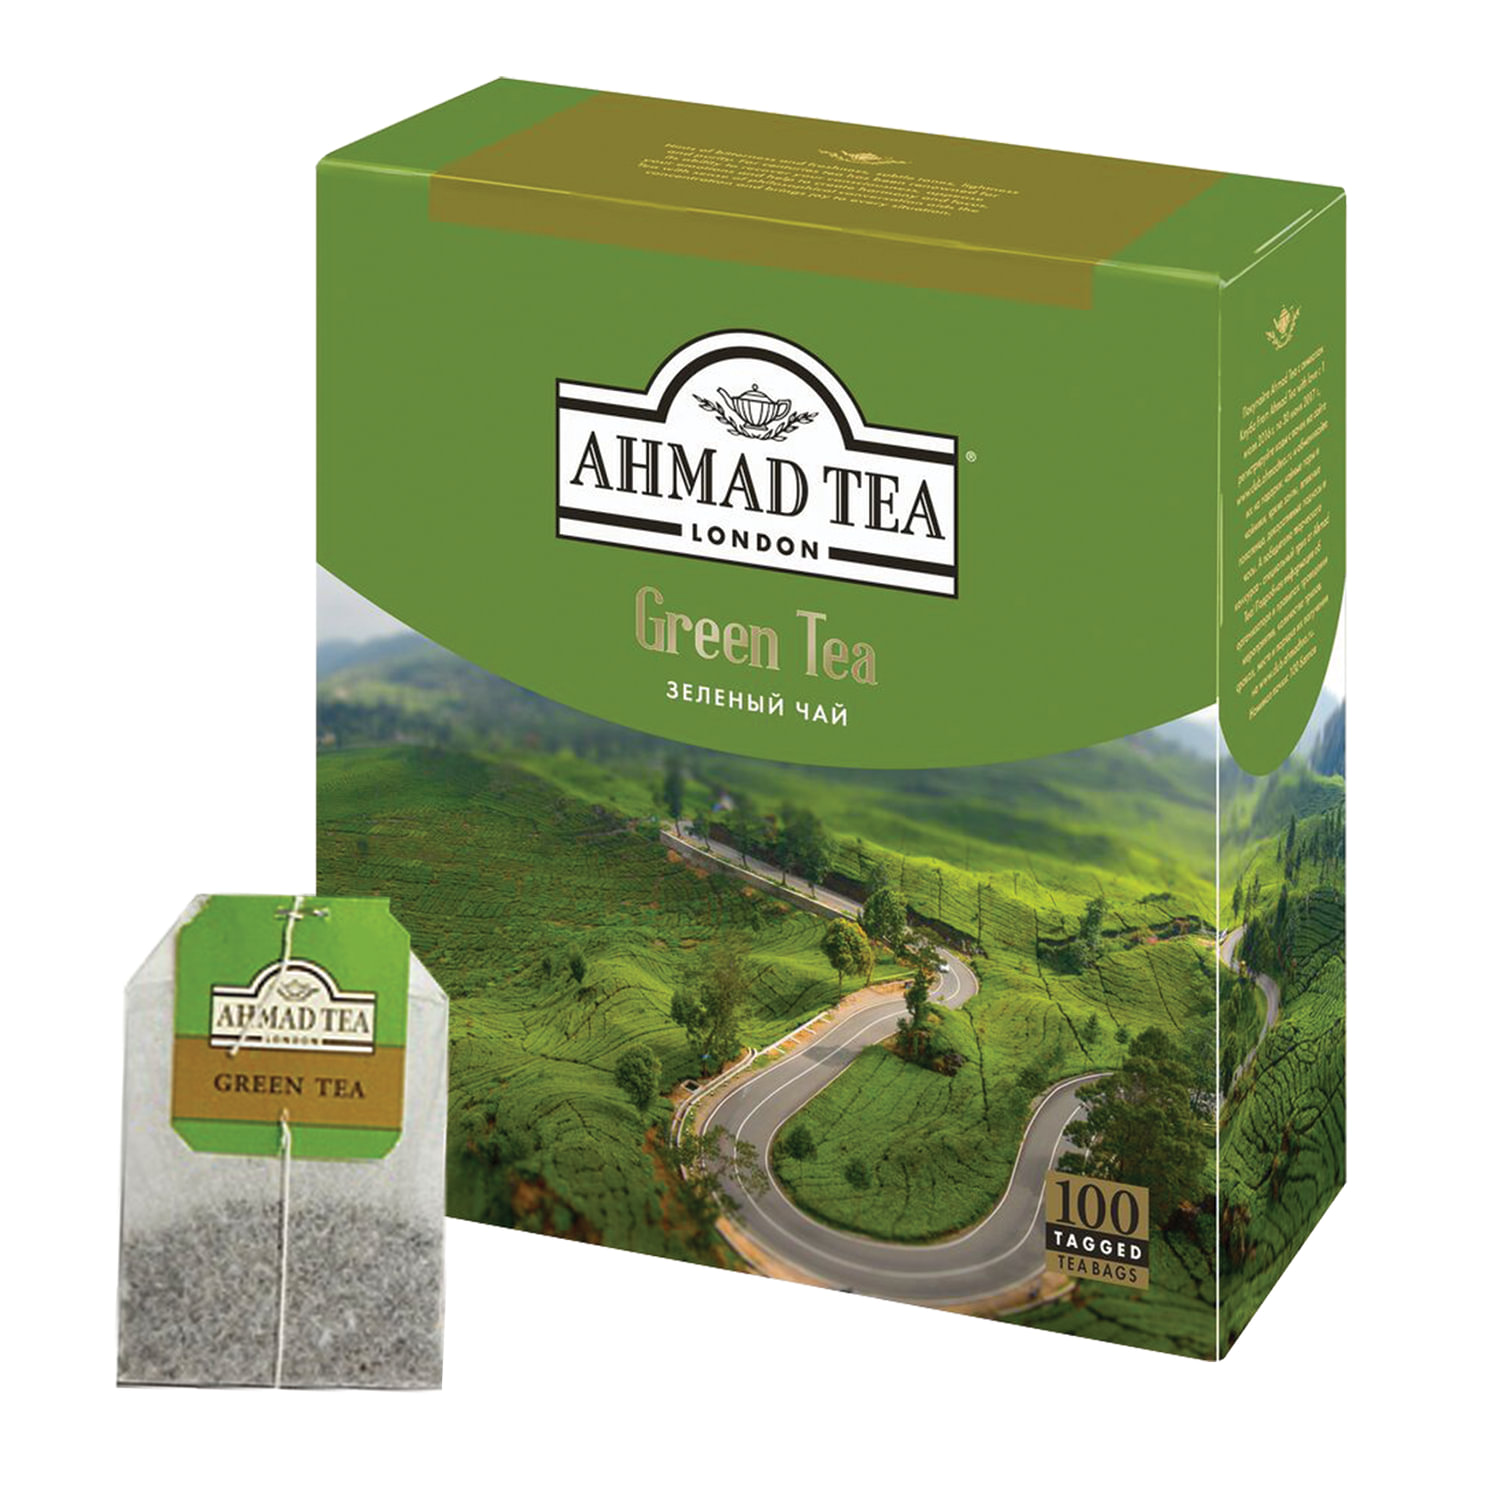 Черный чай в зеленой упаковке. Ahmad / Ахмад зелёный (100пак). Ahmad Tea зеленый чай в пакетиках, 100 шт. Чай Ахмад 100 пакетиков. Чай Ahmad (Ахмад) «Green Tea», зеленый, 100 пакетиков.